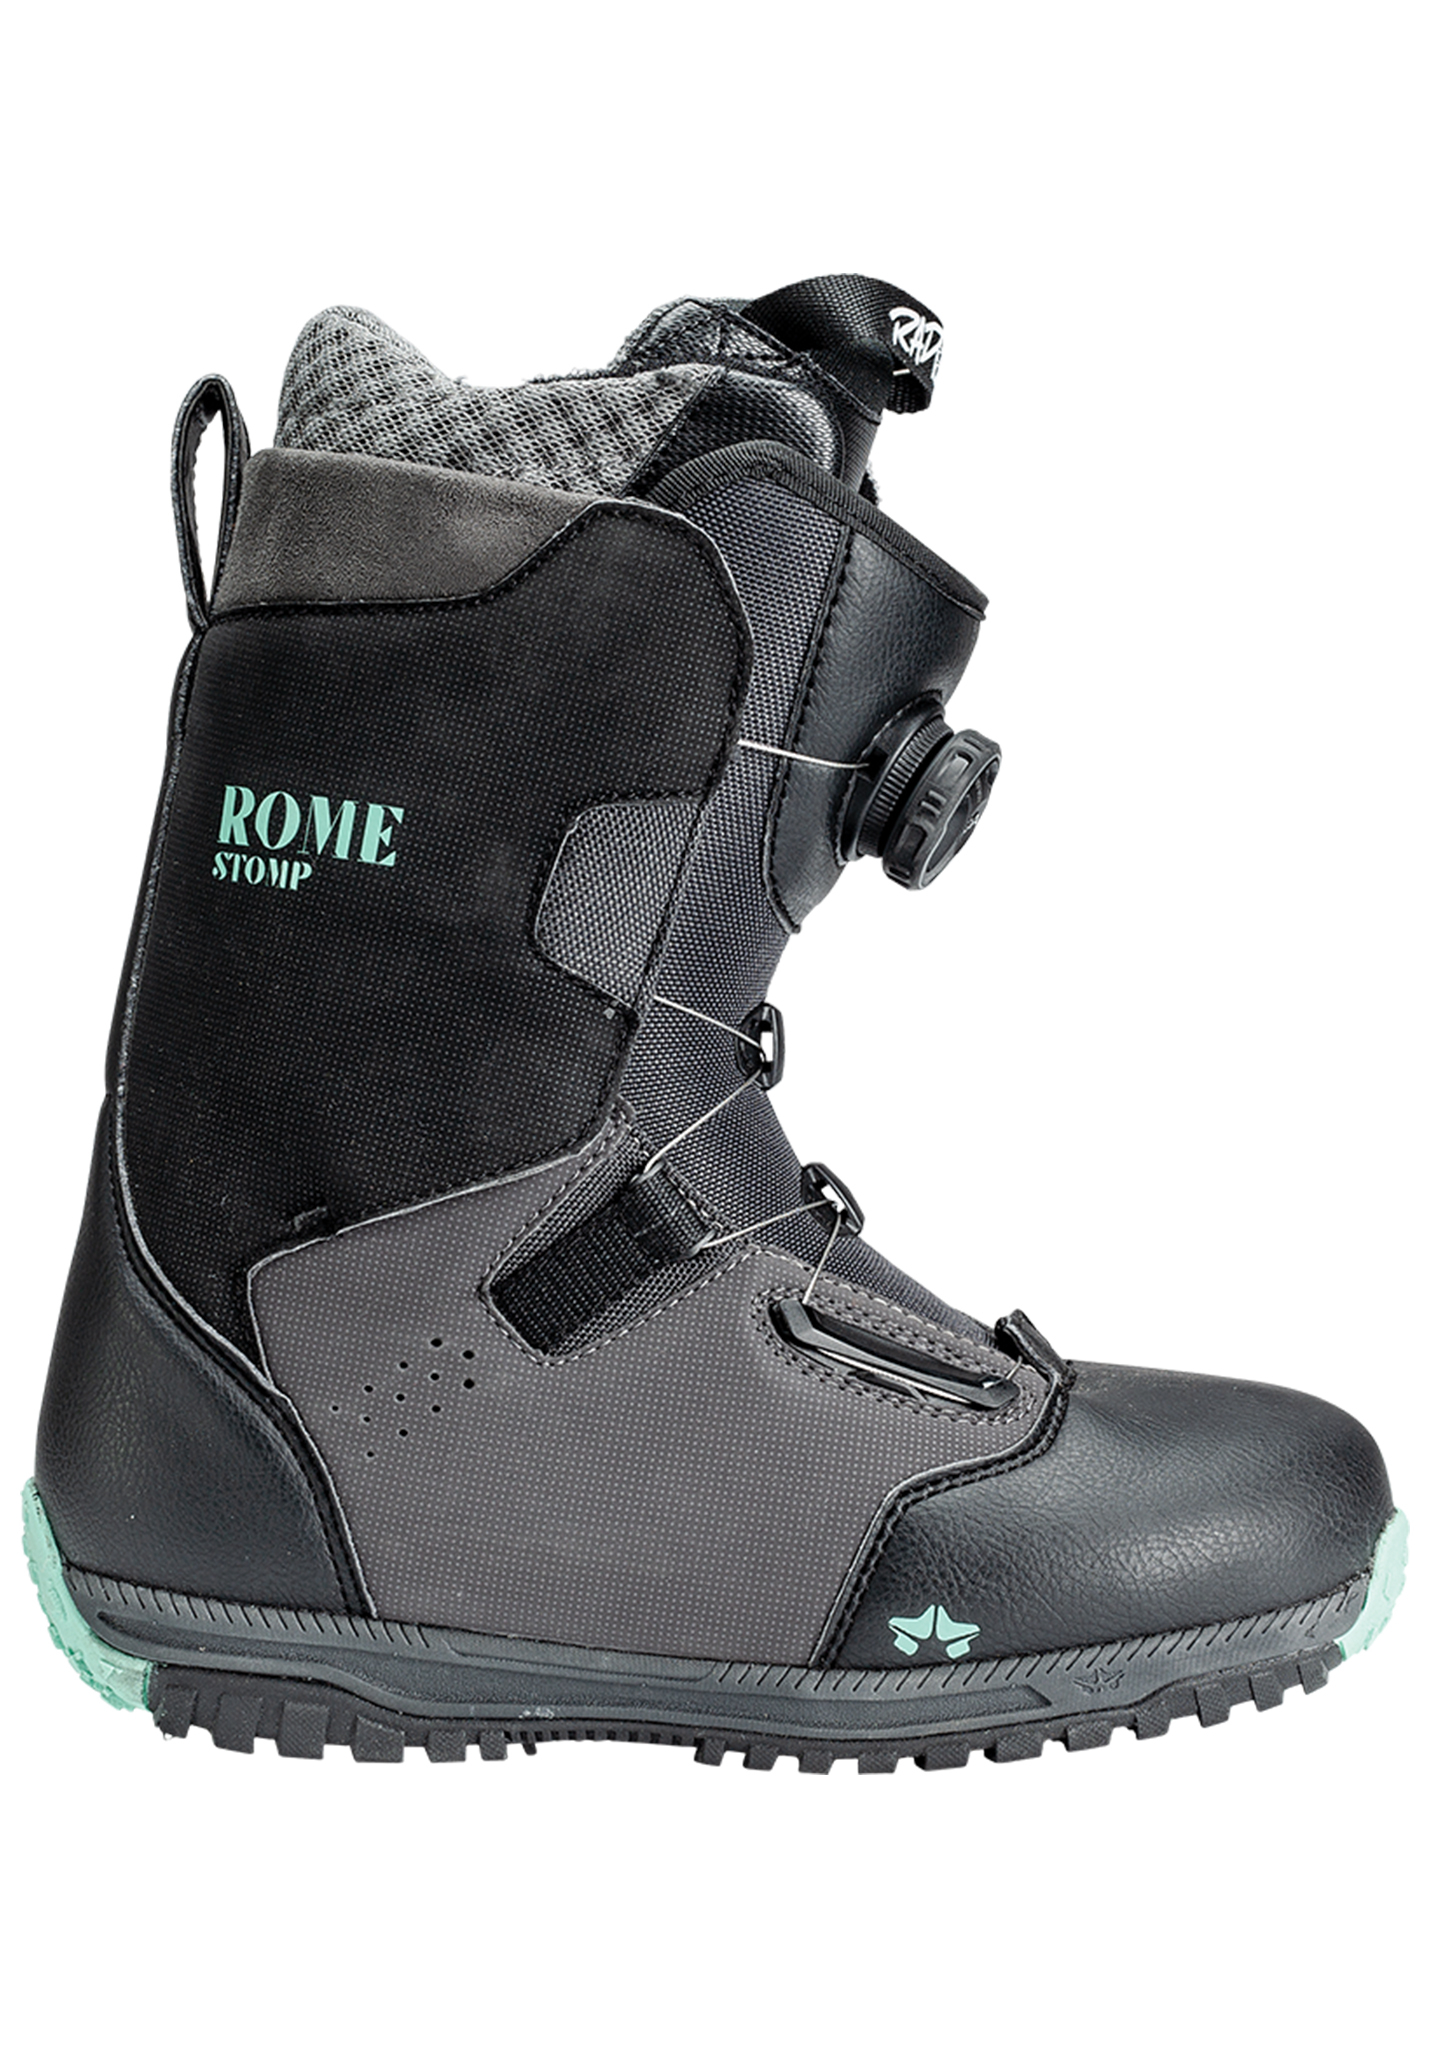 Rome Stomp Freeride Snowboard Boots schwarze minze 39